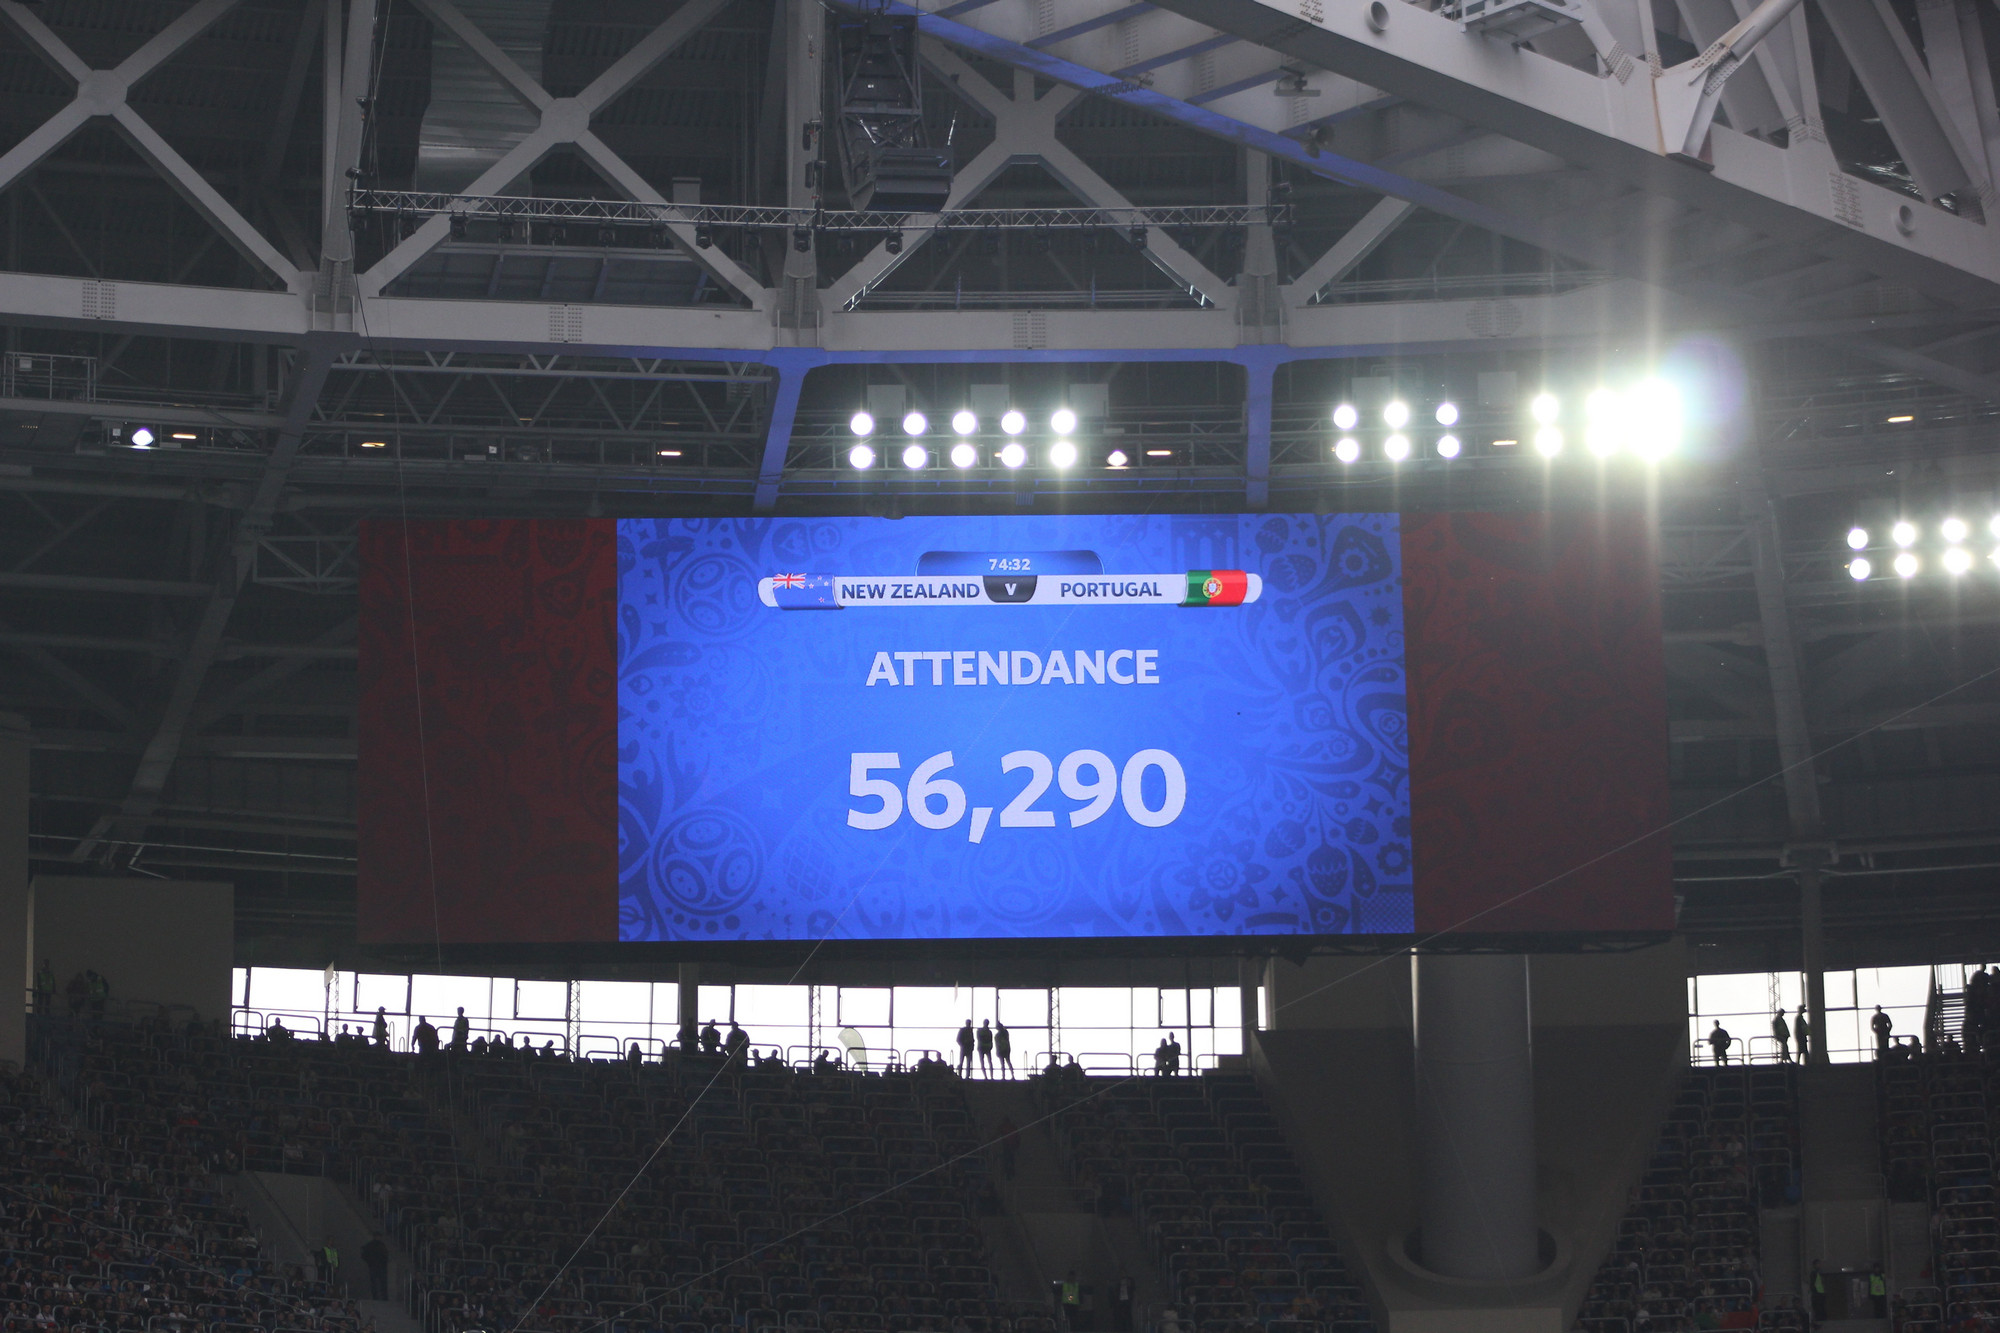 Матч:  Новая Зеландия &mdash; Португалия

Стадион:  &laquo;Санкт-Петербург Арена&raquo;

Посещаемость: 56&nbsp;290

Вместимость:  57&nbsp;268

На групповом этапе матч между Новой Зеландией и Португалией стал самым посещаемым &mdash; посмотреть на Криштиану Роналду пришли более полусотни тысяч зрителей. До аншлага этот матч не&nbsp;дотянул совсем немного
